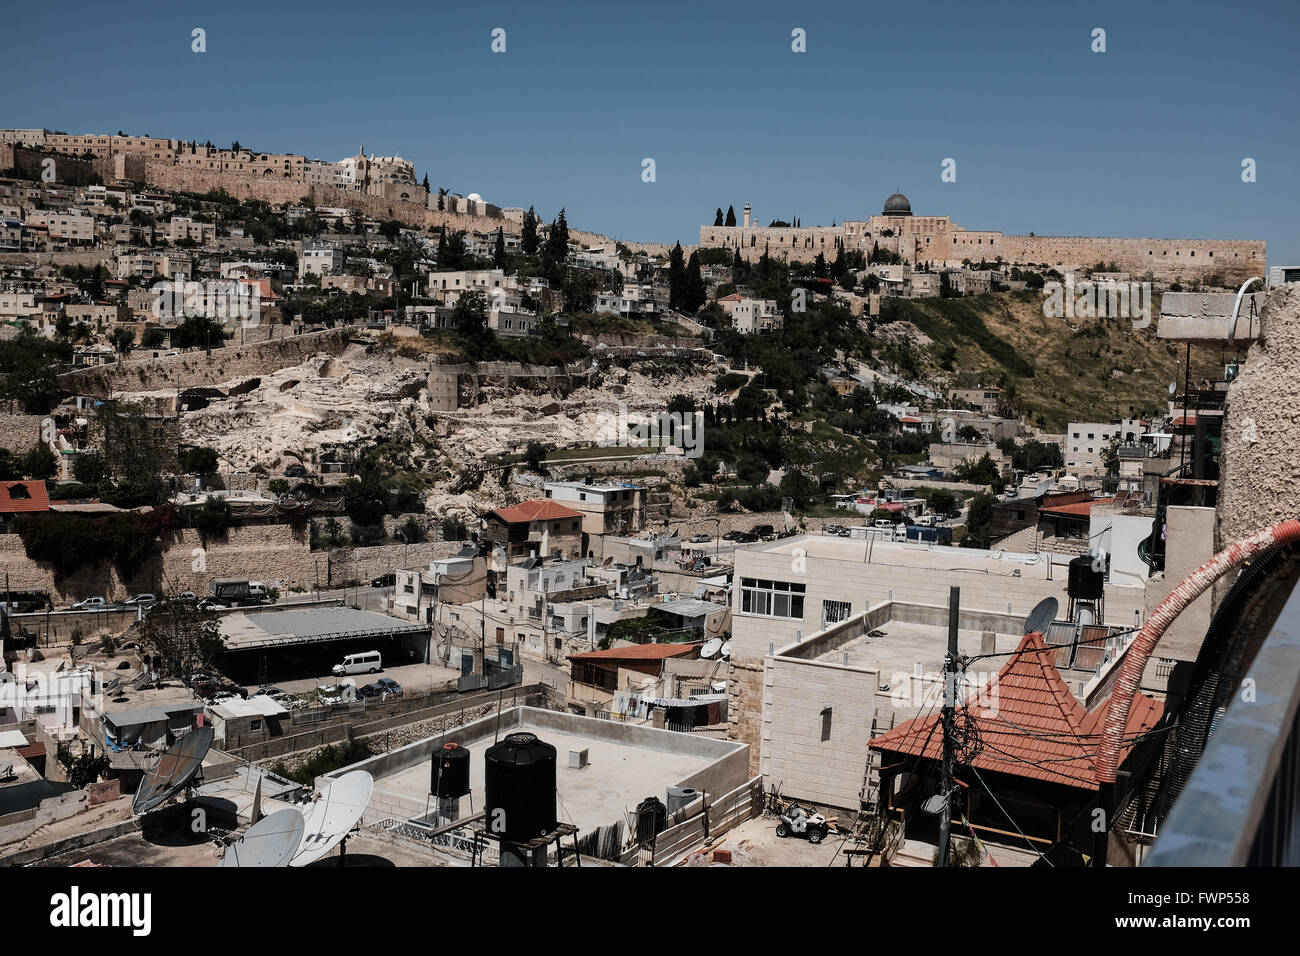 Jérusalem, Israël. 7 avril, 2016. Le village de Silwan est situé sur les pentes de la vallée du Cédron sous le mont du Temple et la mosquée Al Aqsa, visible à l'arrière-plan. Environ 500 juifs israéliens vivent en ce moment à Kfar parmi du Siloé 45 000 Arabes palestiniens qui appellent le village Silwan et considérer les Juifs colons illégaux. La plupart des terres ont été orchestrés par d'Ateret Cohanim, une organisation juive israélienne, qui travaille pour la création d'une majorité juive dans les quartiers arabes de Jérusalem-Est, prétendant tous les accords fonciers légitimes et légaux. Banque D'Images